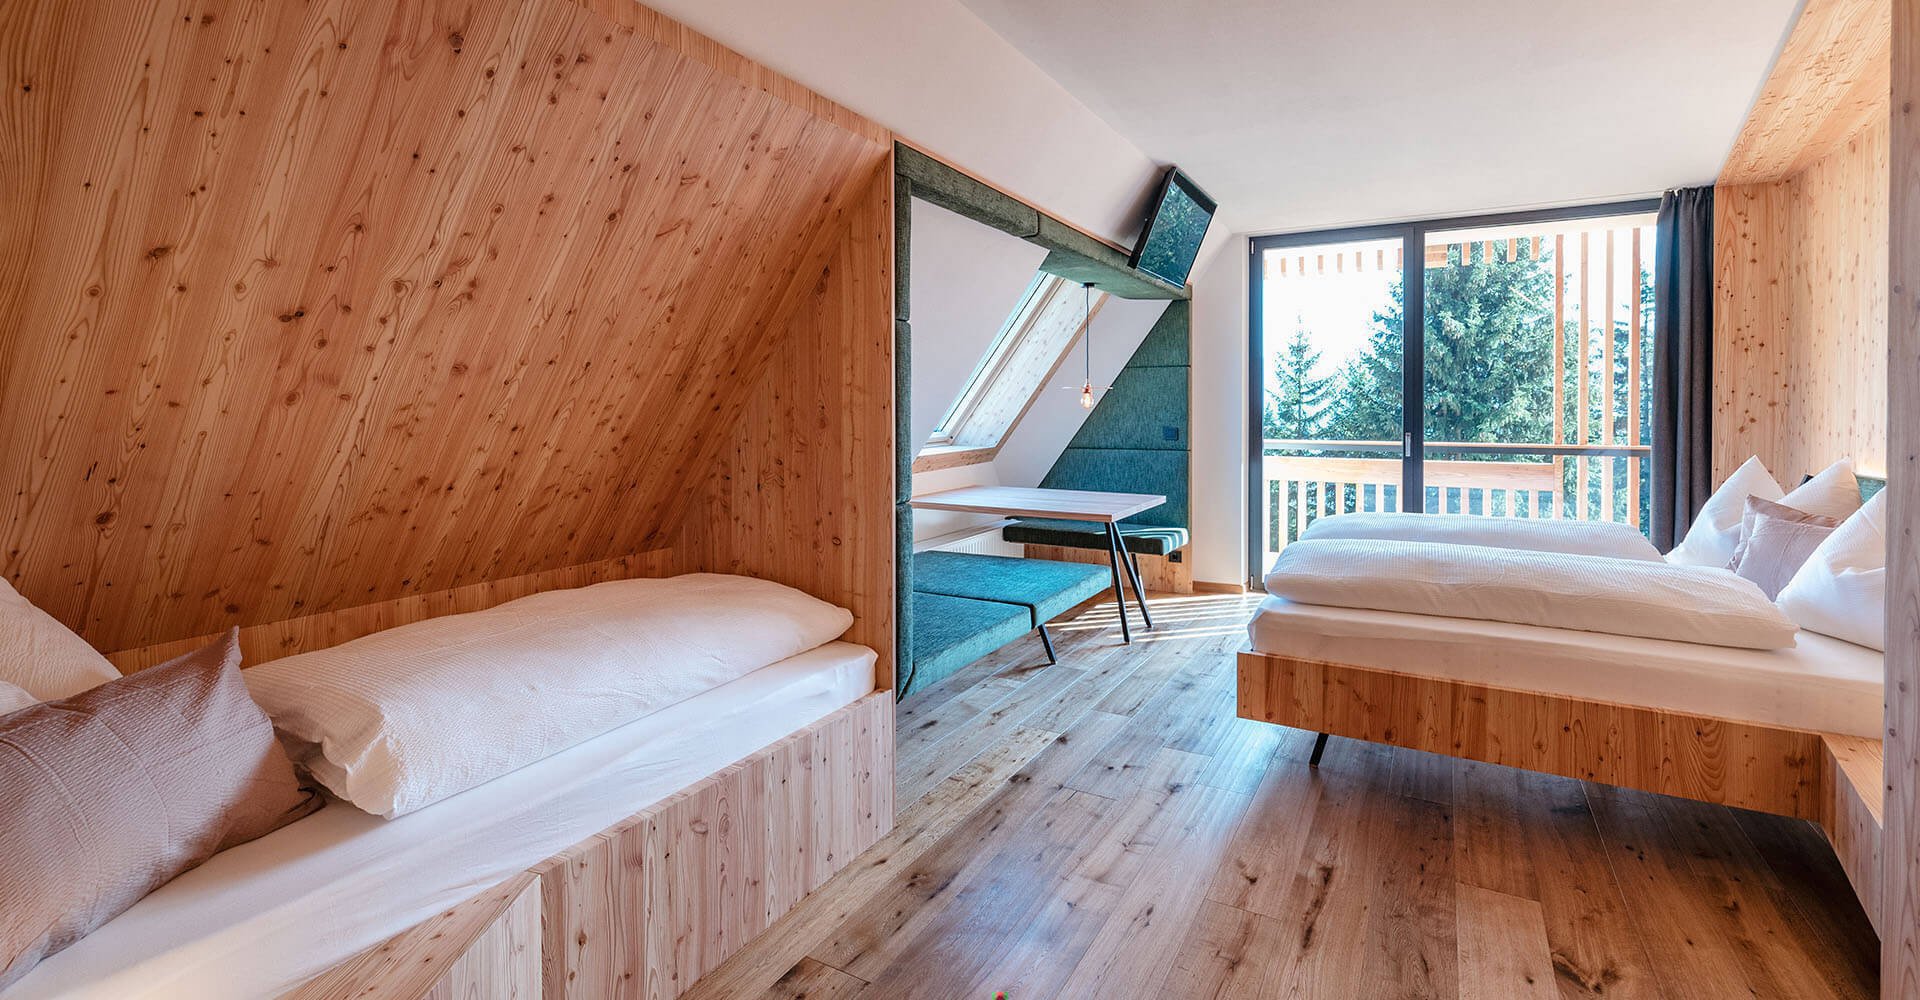 Wohnen in den Dolomiten | Almhotel auf der Rodenecker-Lüsner Alm | Oberhauserhütte in Südtirol